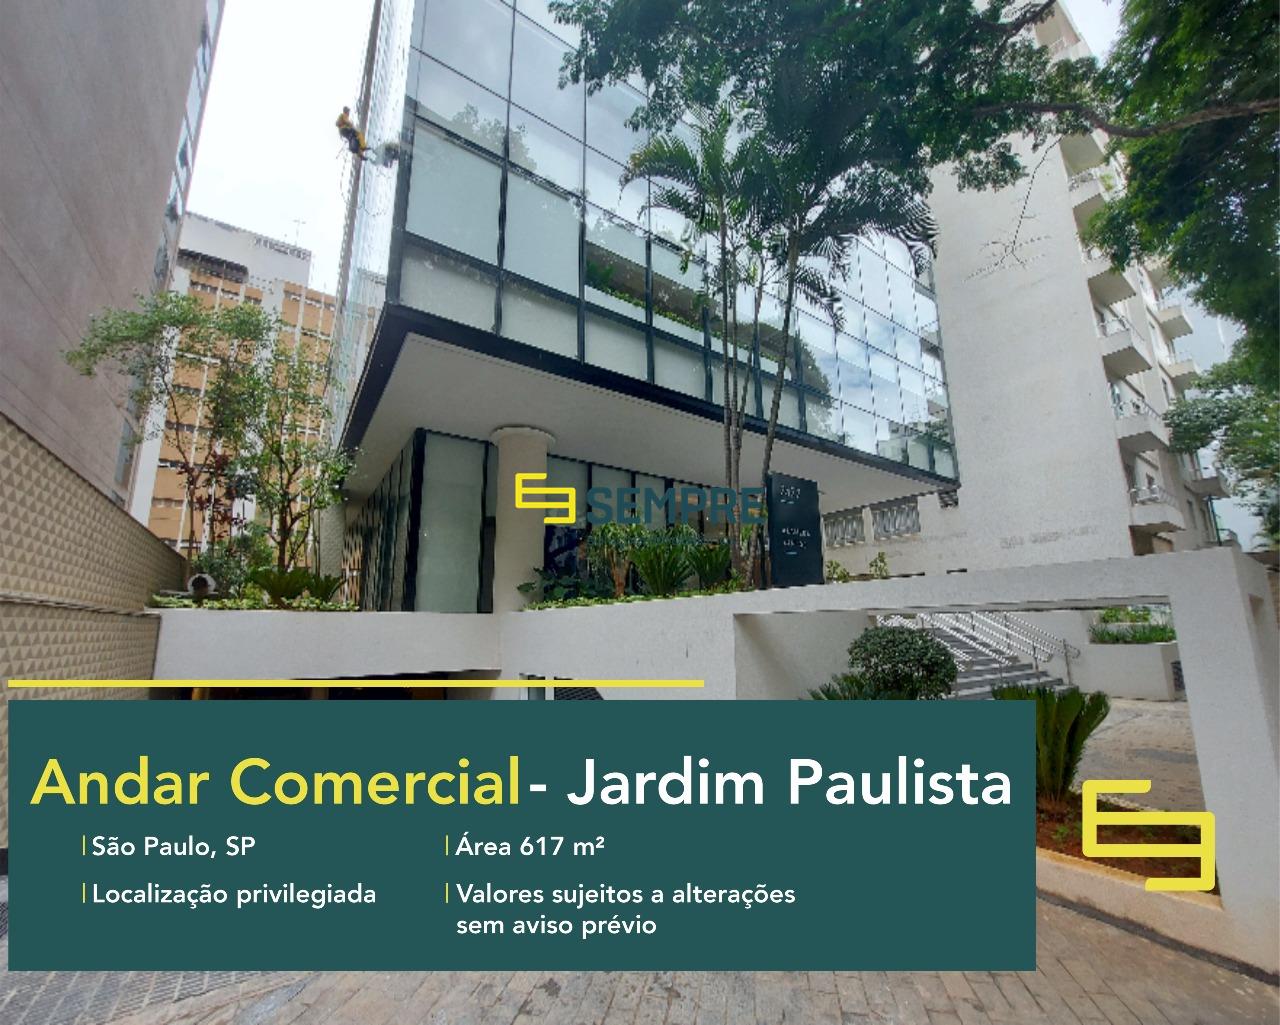 Laje corporativa no Edifício Flex Office para locação em São Paulo, excelente localização. O ponto comercial conta com área de 617 m².